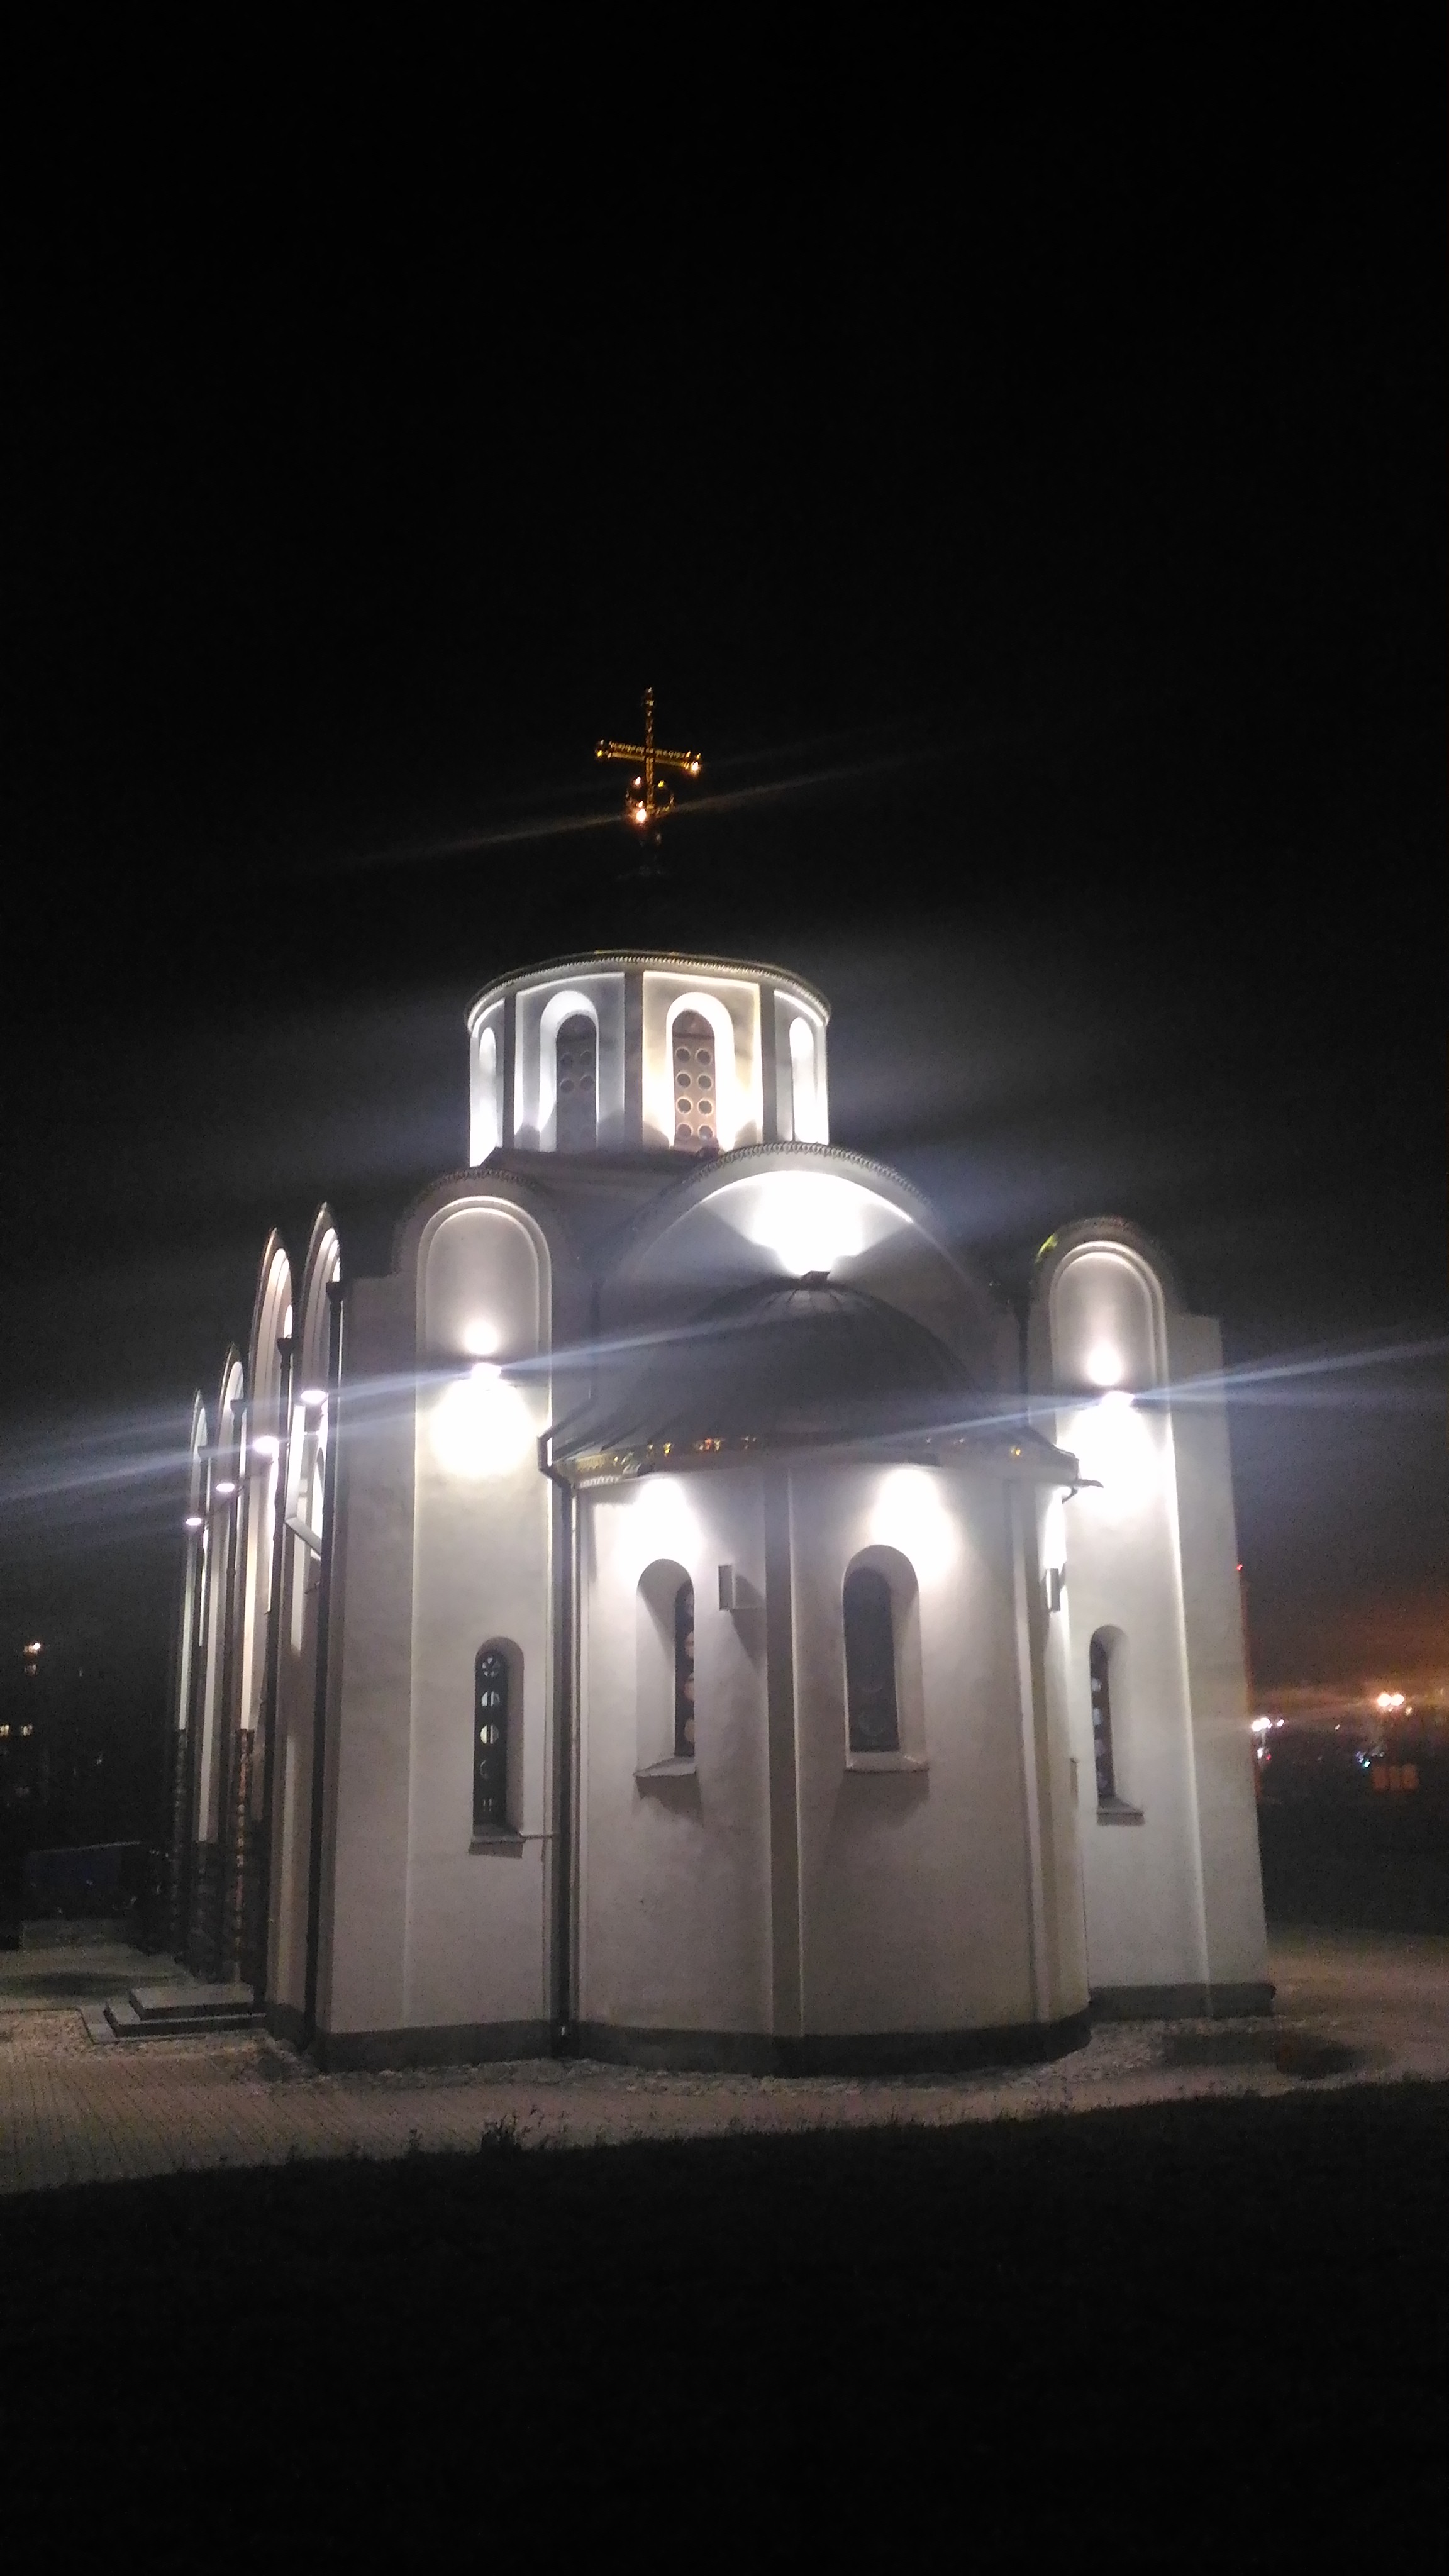 P 20191108 181535 1 - Храм Благовещения Пресвятой Богородицы в Витебске